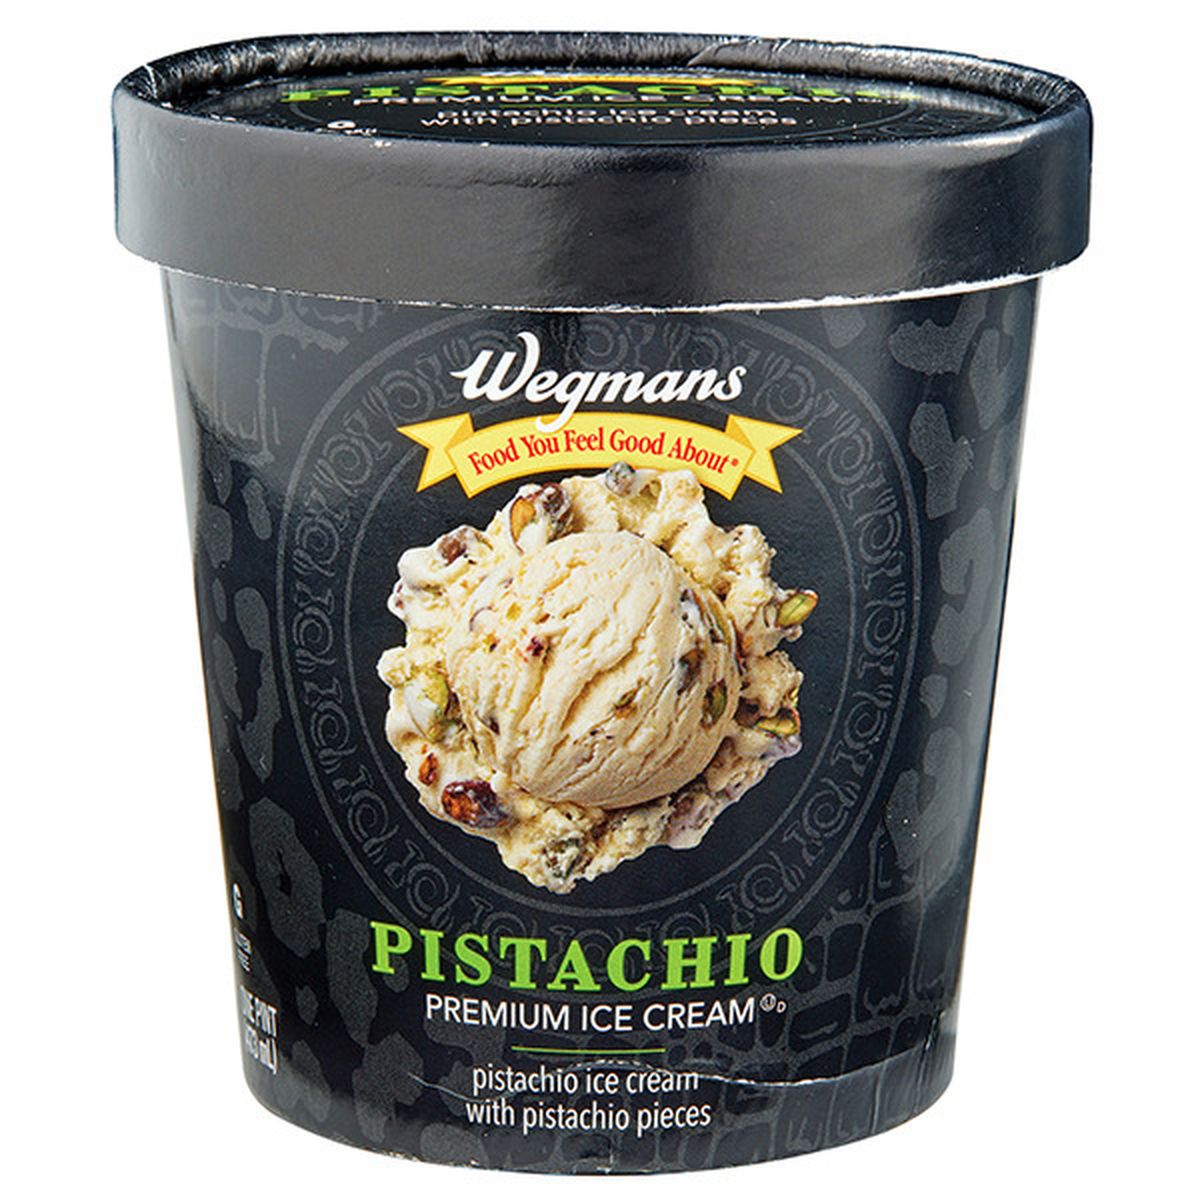 Calories in Wegmans Pistachio Premium Ice Cream